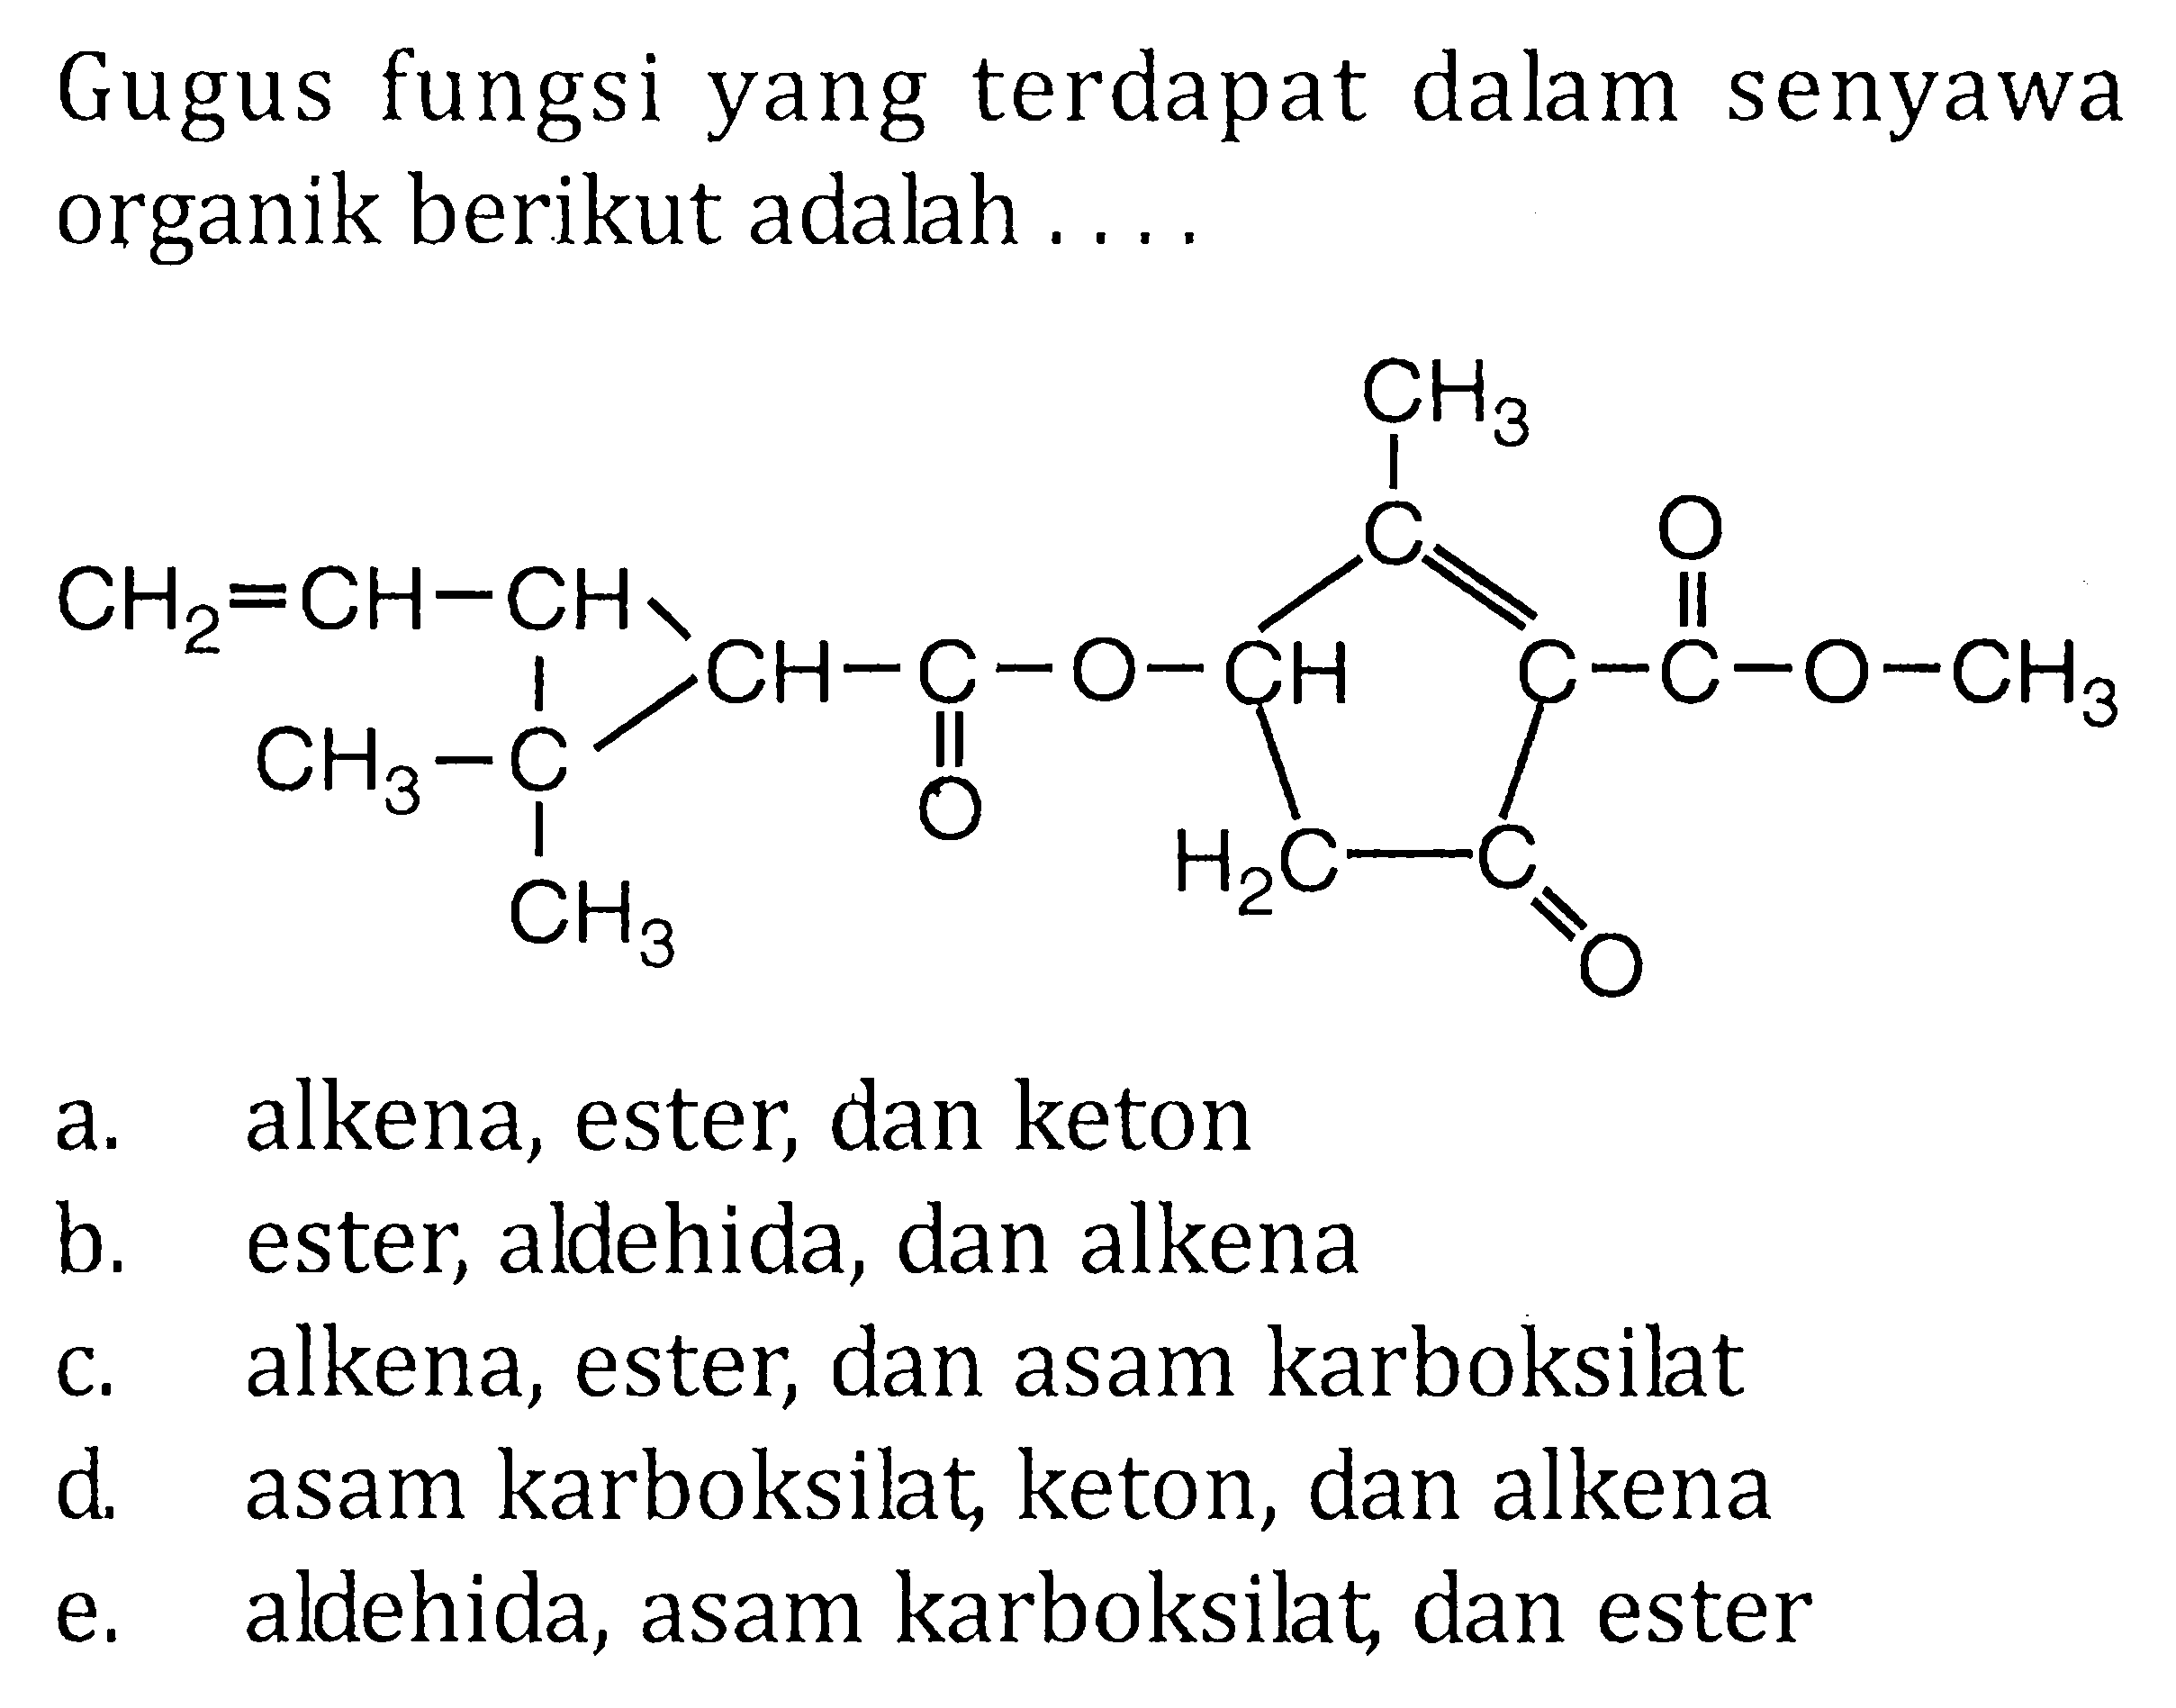 Gugus fungsi yang terdapat dalam senyawa organik berikut adalah .... CH2 = CH - CH - CH - C - O - CH - C = C - C - O - CH3 CH3 C CH3 O CH3 H2C C O Oa. alkena, ester, dan keton b. ester, aldehida, dan alkena c. alkena, ester, dan asam karboksilat d. asam karboksilat, keton, dan alkena e. aldehida, asam karboksilat, dan ester 